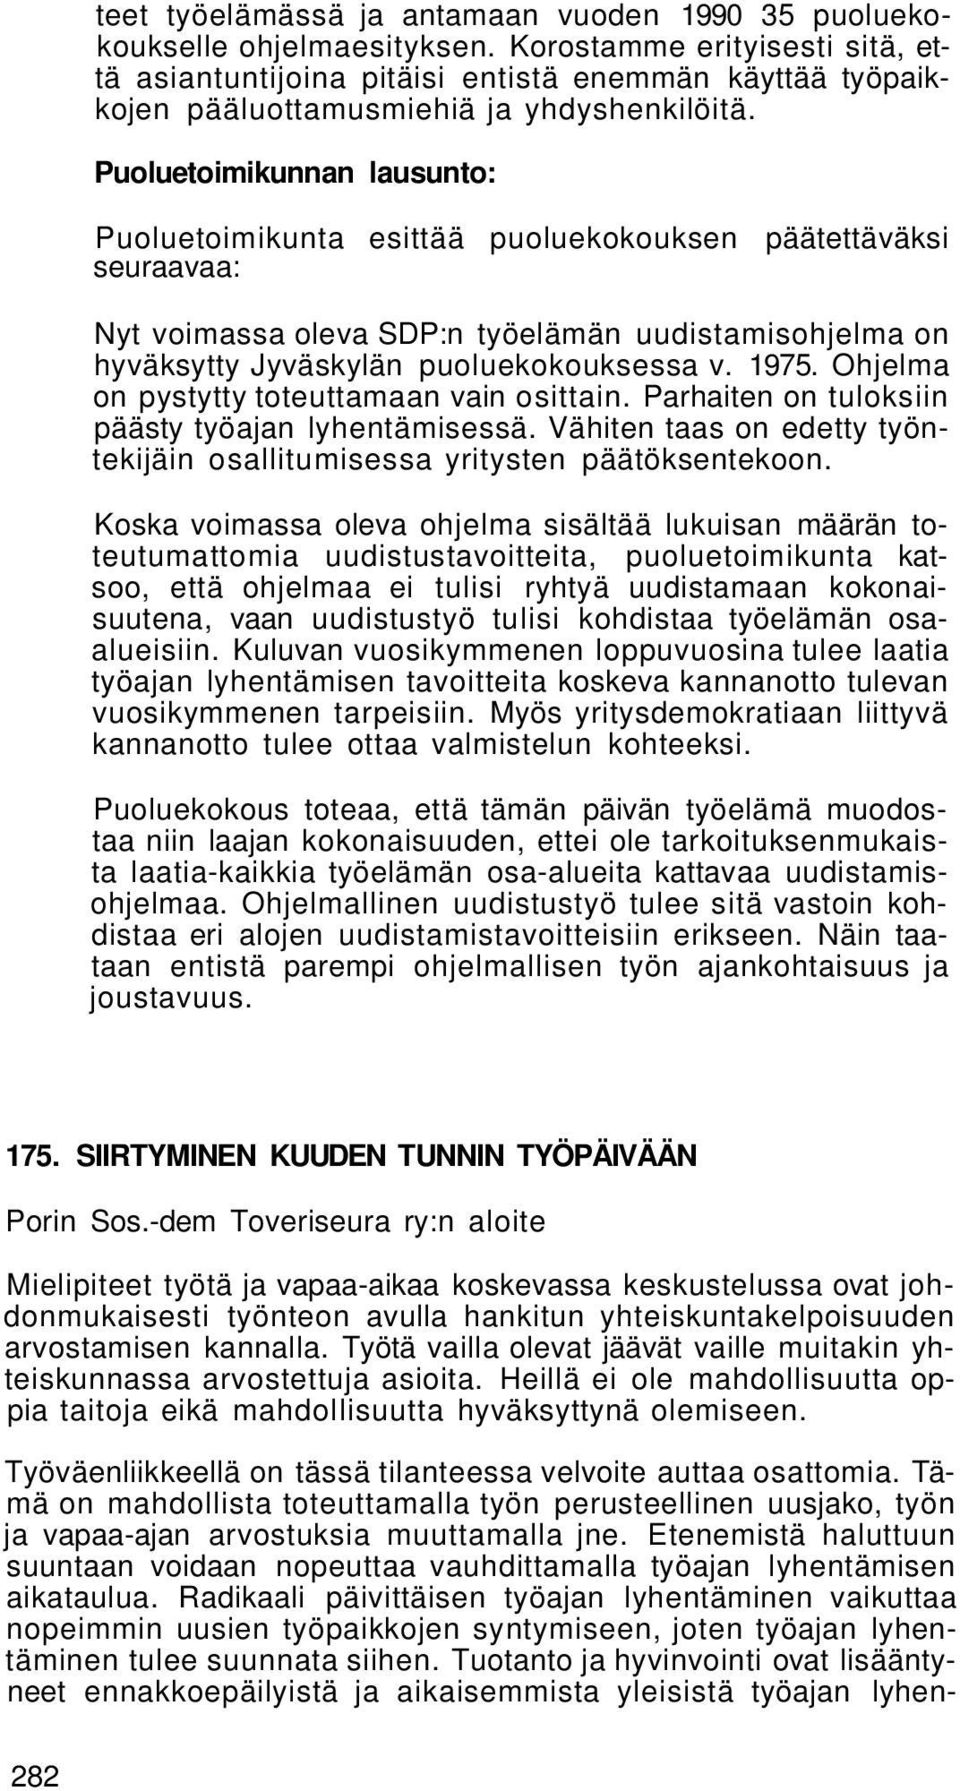 Puoluetoimikunnan lausunto: Puoluetoimikunta esittää puoluekokouksen päätettäväksi seuraavaa: Nyt voimassa oleva SDP:n työelämän uudistamisohjelma on hyväksytty Jyväskylän puoluekokouksessa v. 1975.